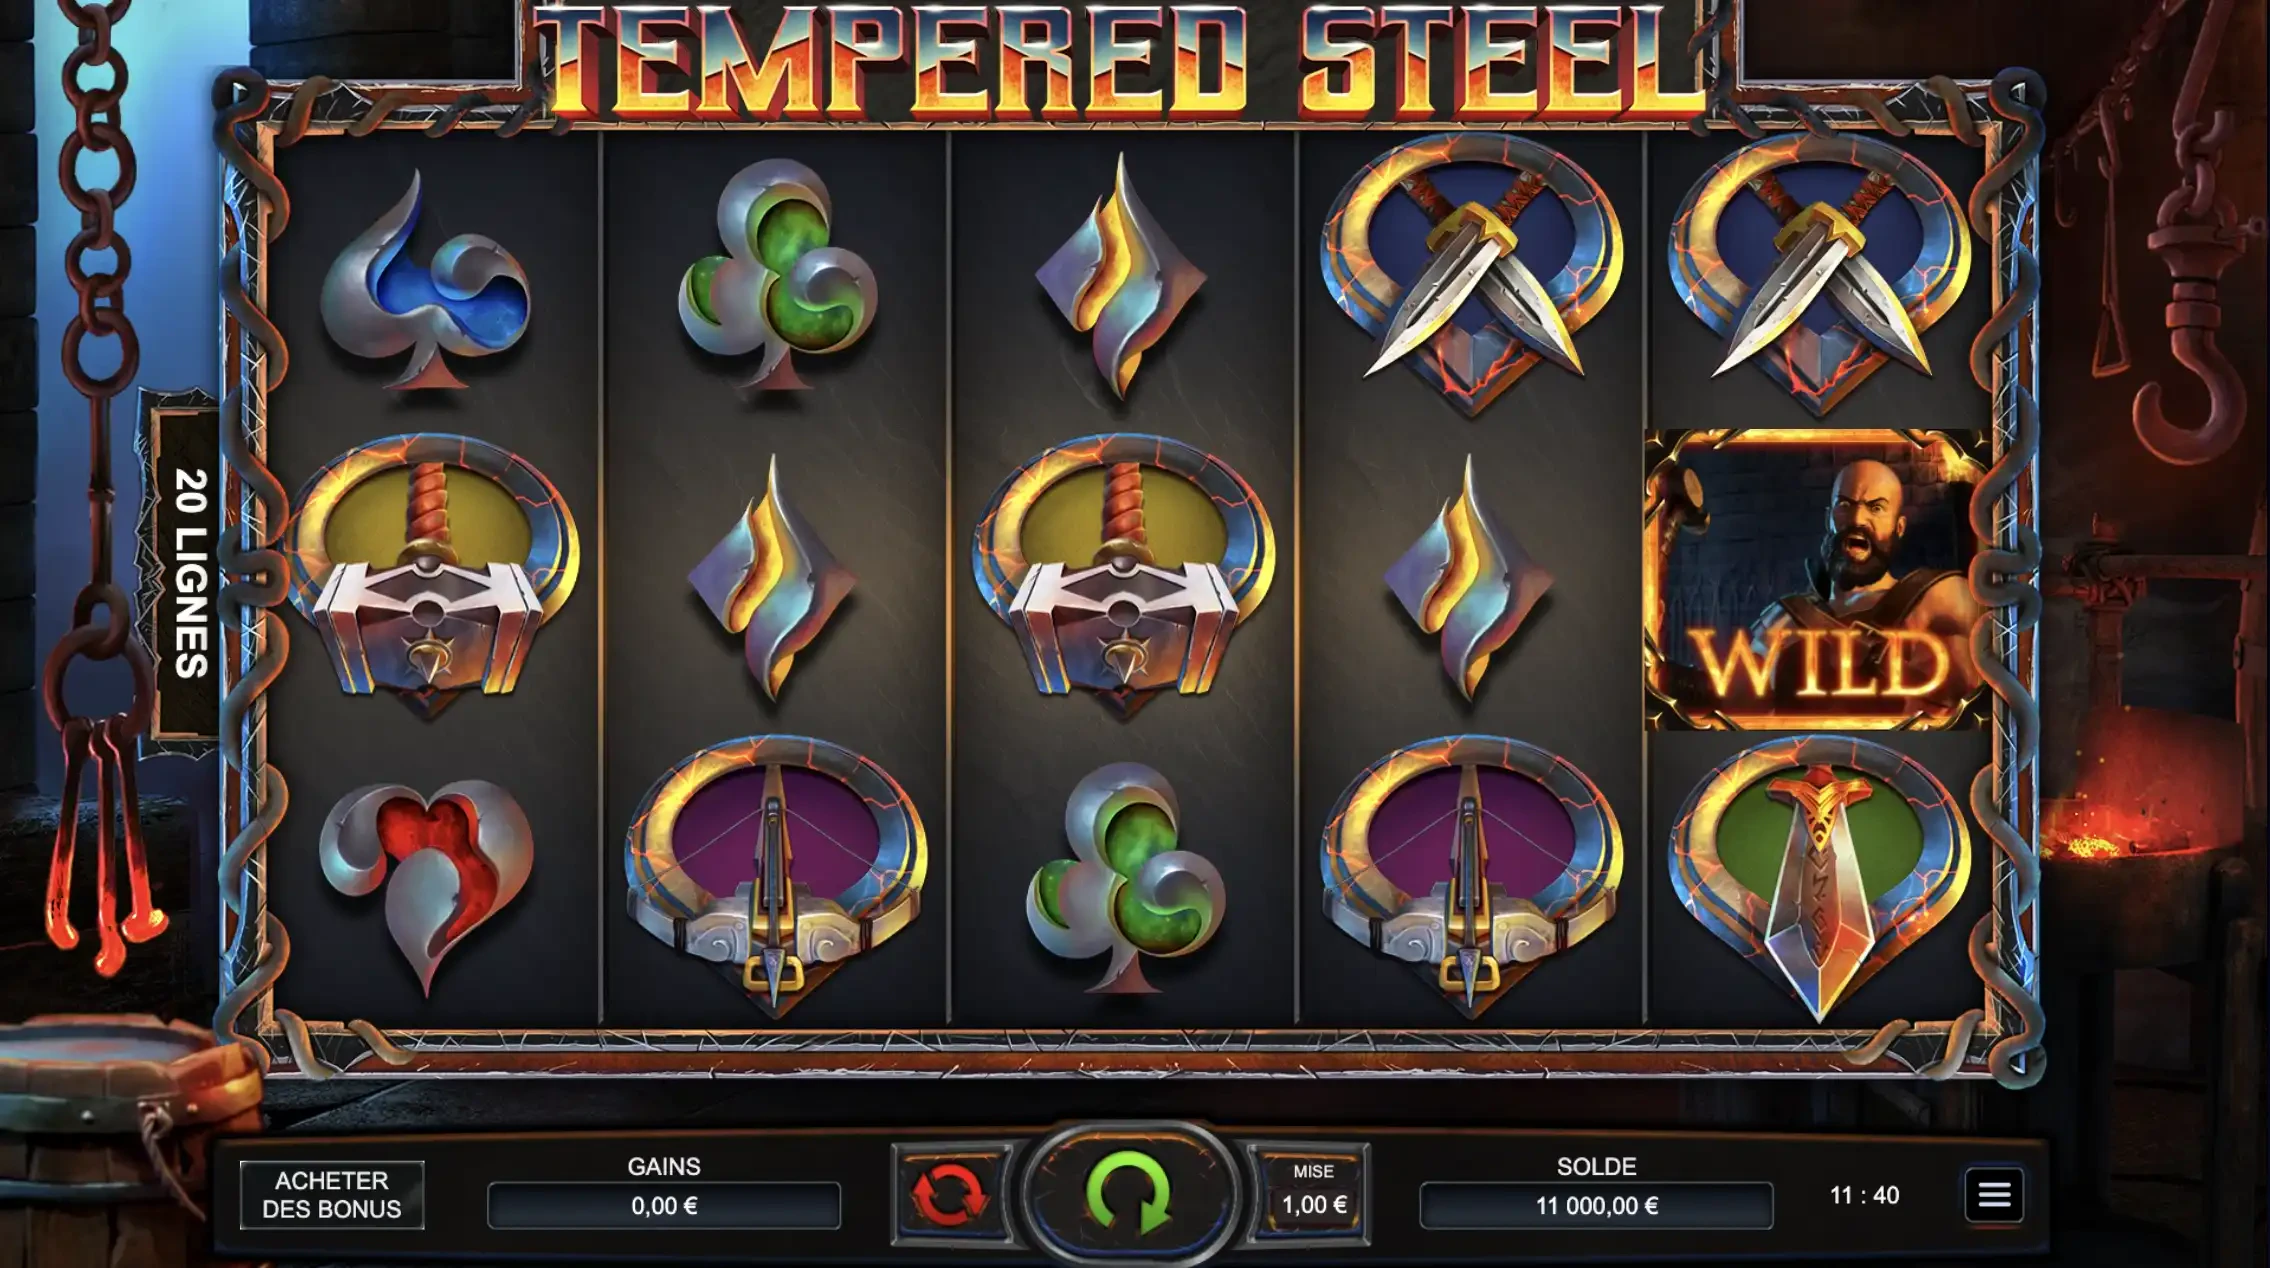 Grille de départ de la machine à sous Tempered Steel du provider BulletProof Games en collaboration avec Yggdrasil Gaming